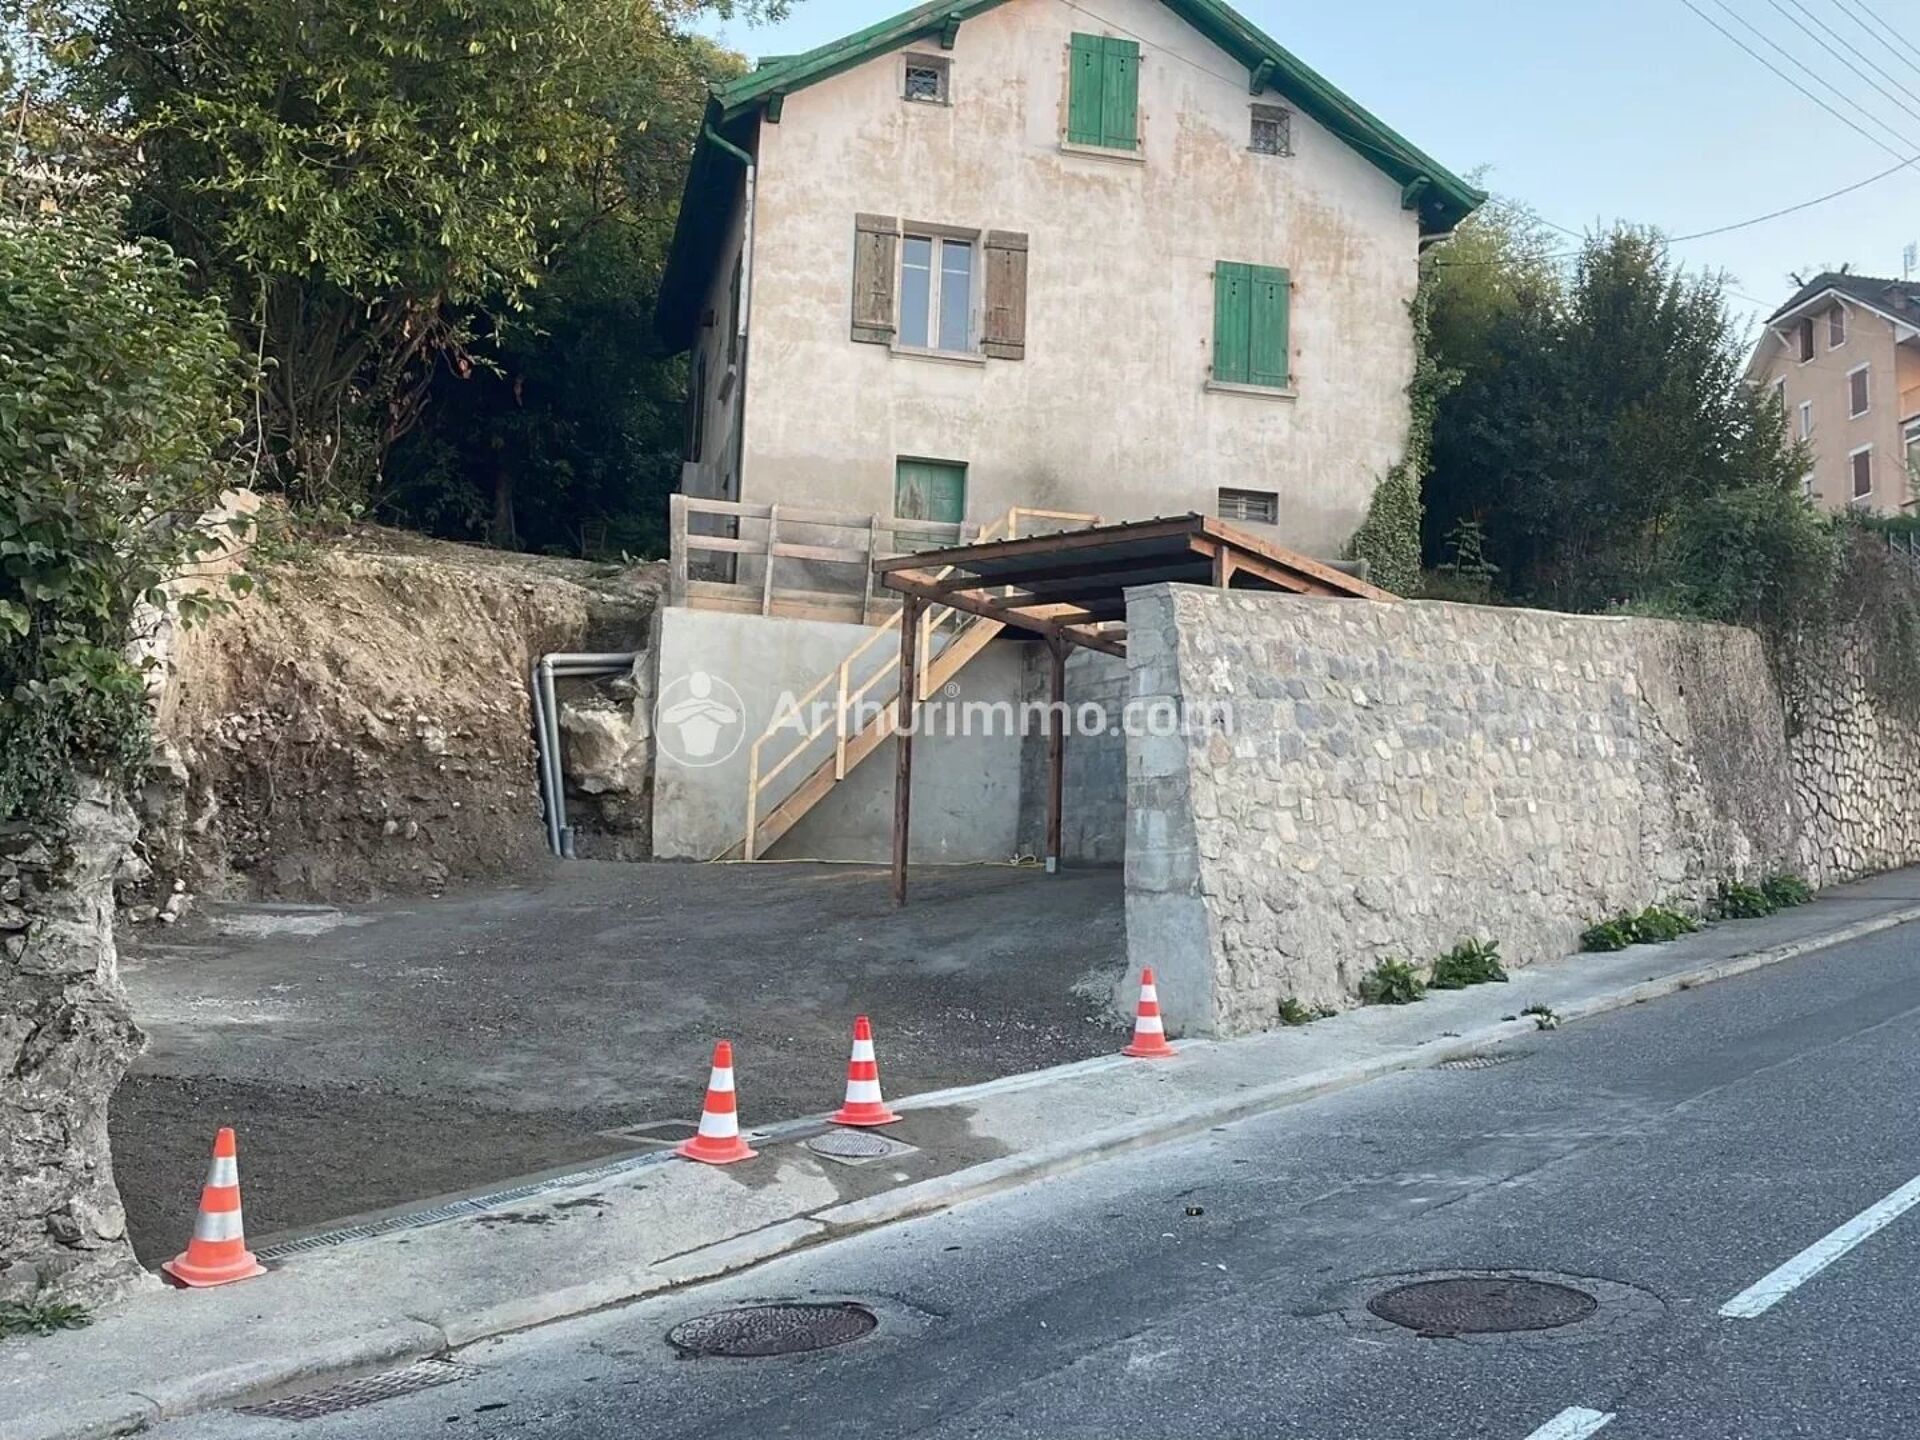 Vente Maison 100m² 5 Pièces à Évian-les-Bains (74500) - Arthurimmo